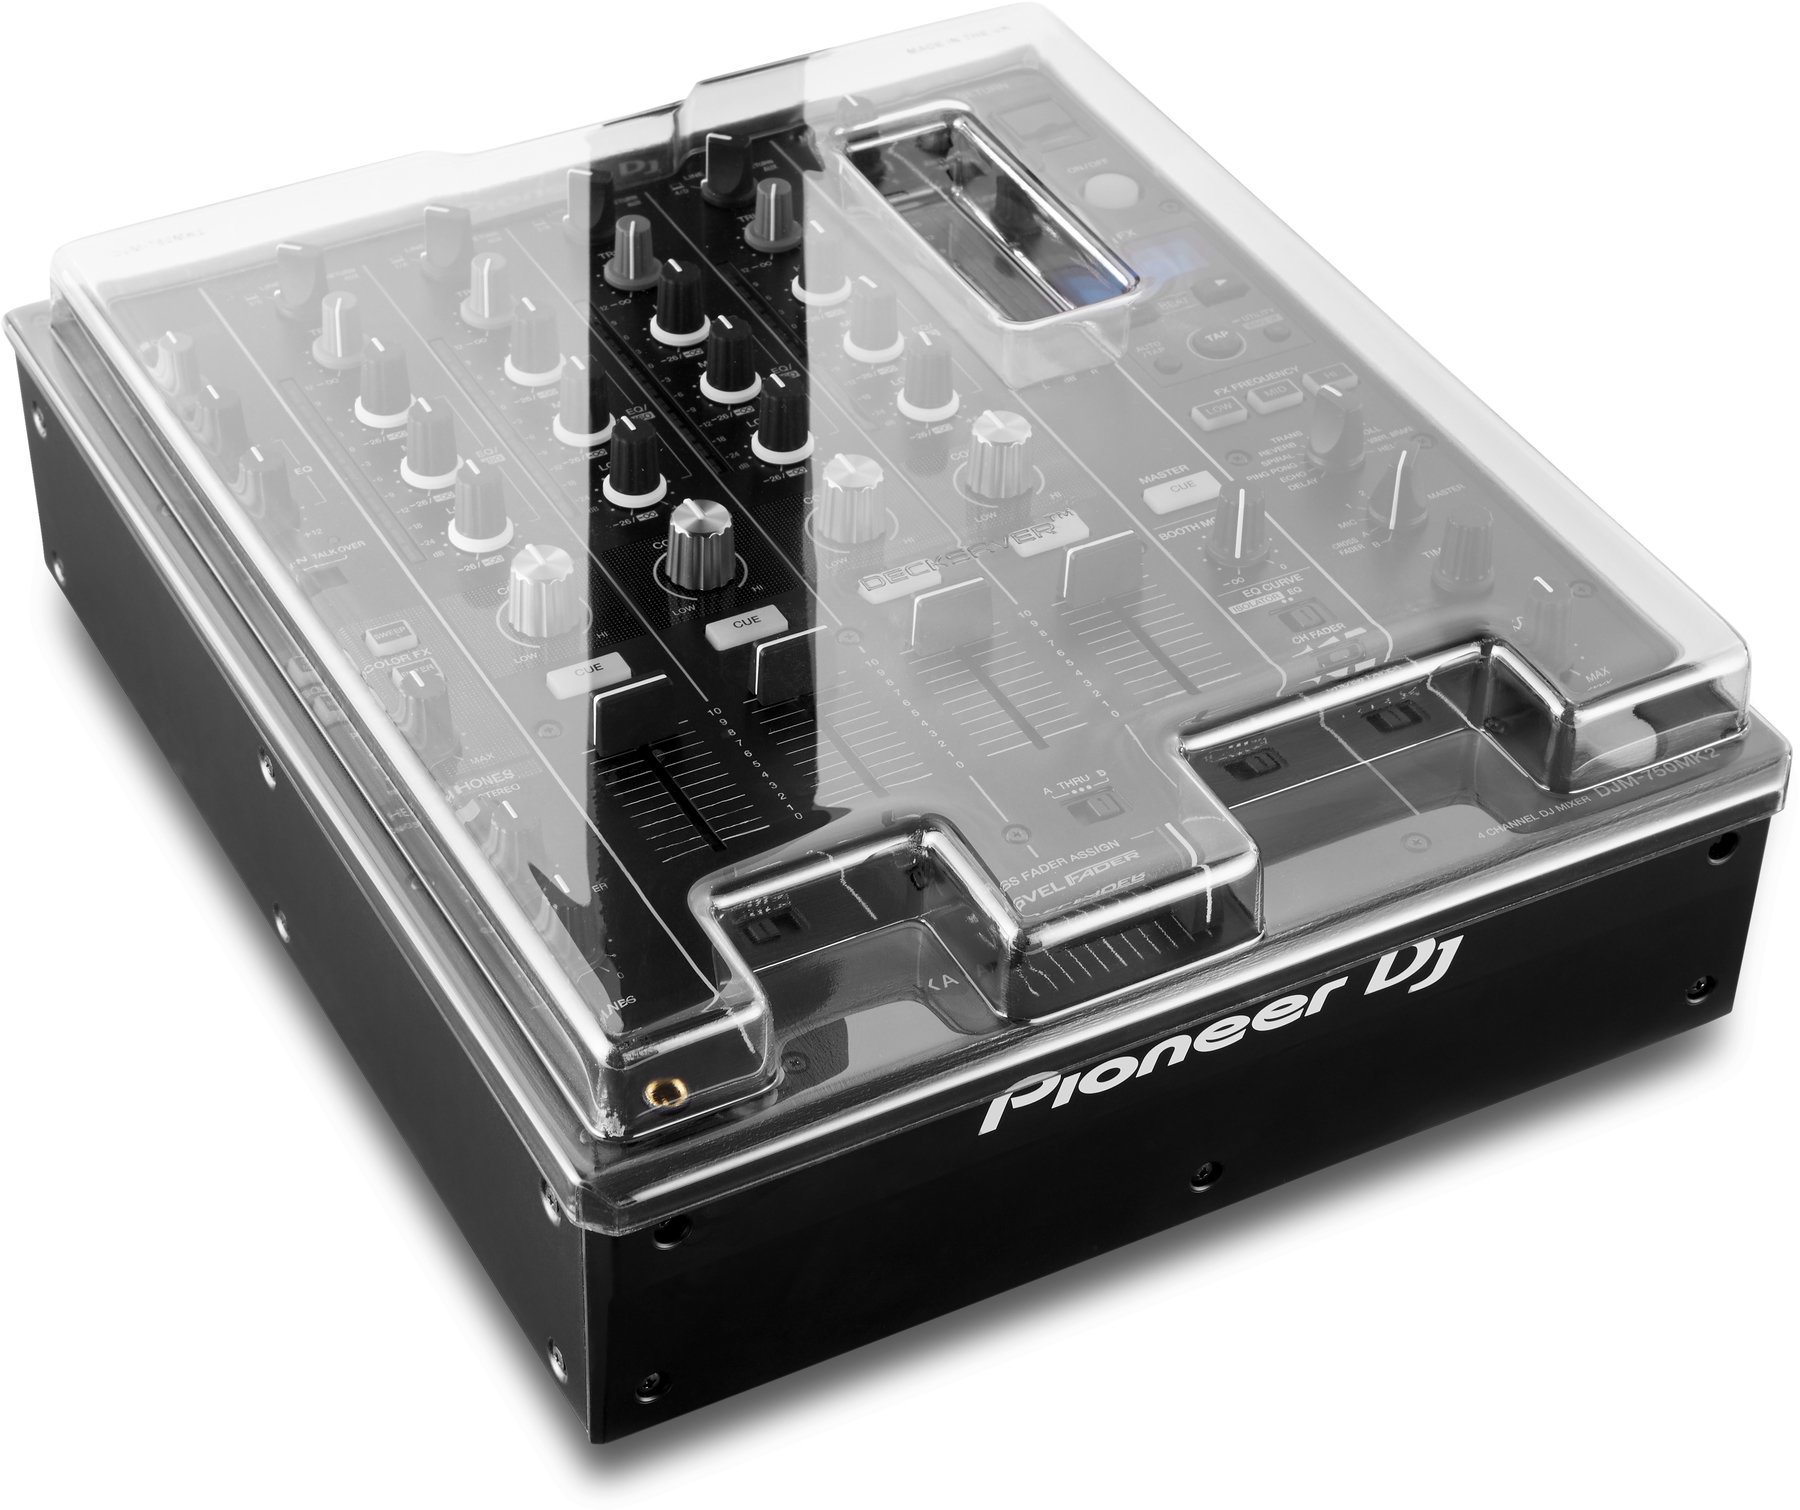 Ochranný kryt pre DJ mixpulty Decksaver Pioneer DJM-750MK2